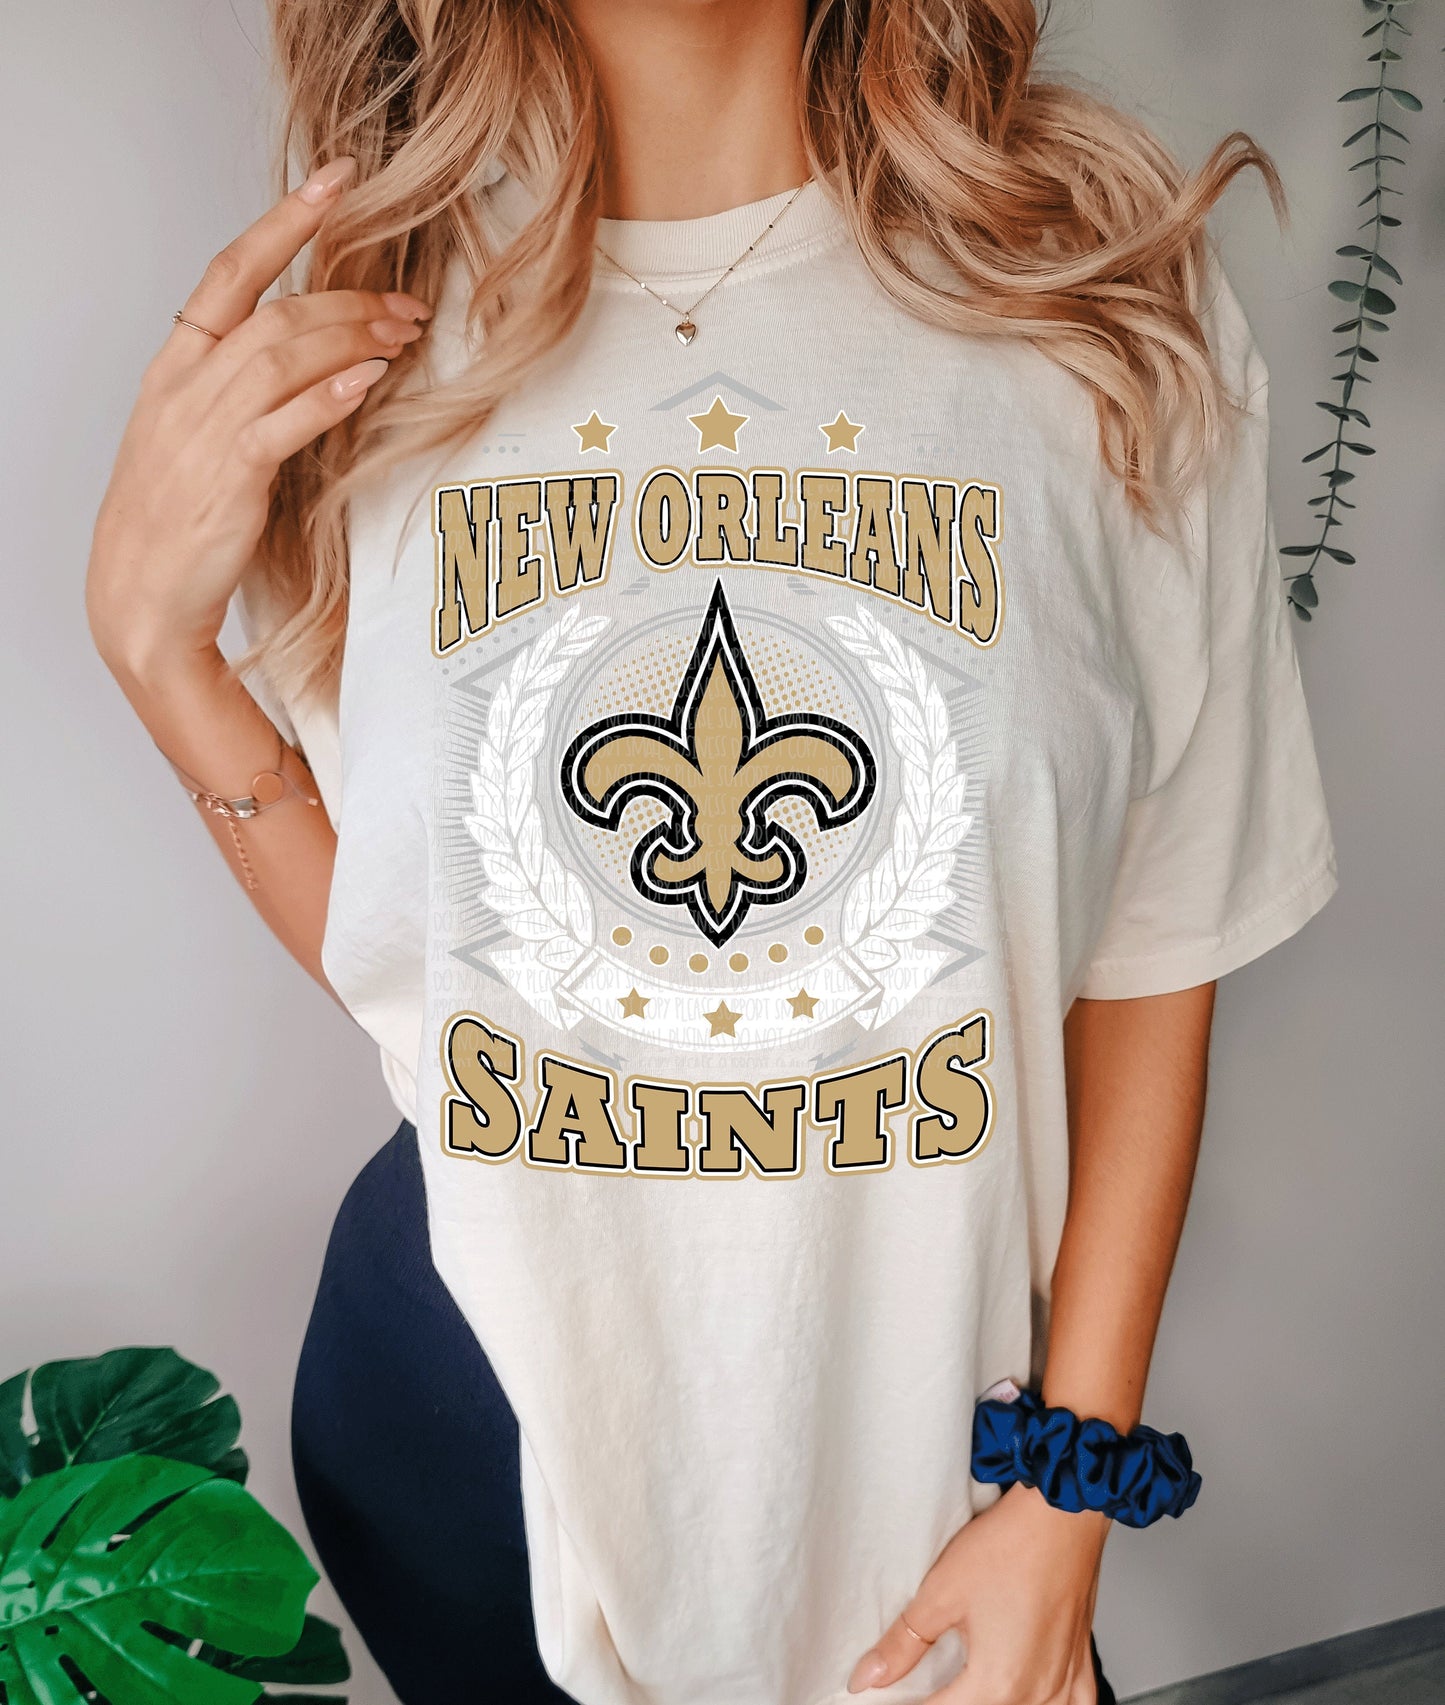 New Orleans Saints Shirt, Saints fan tshirt, comfort colors saints shirt, unisex NFL shirt